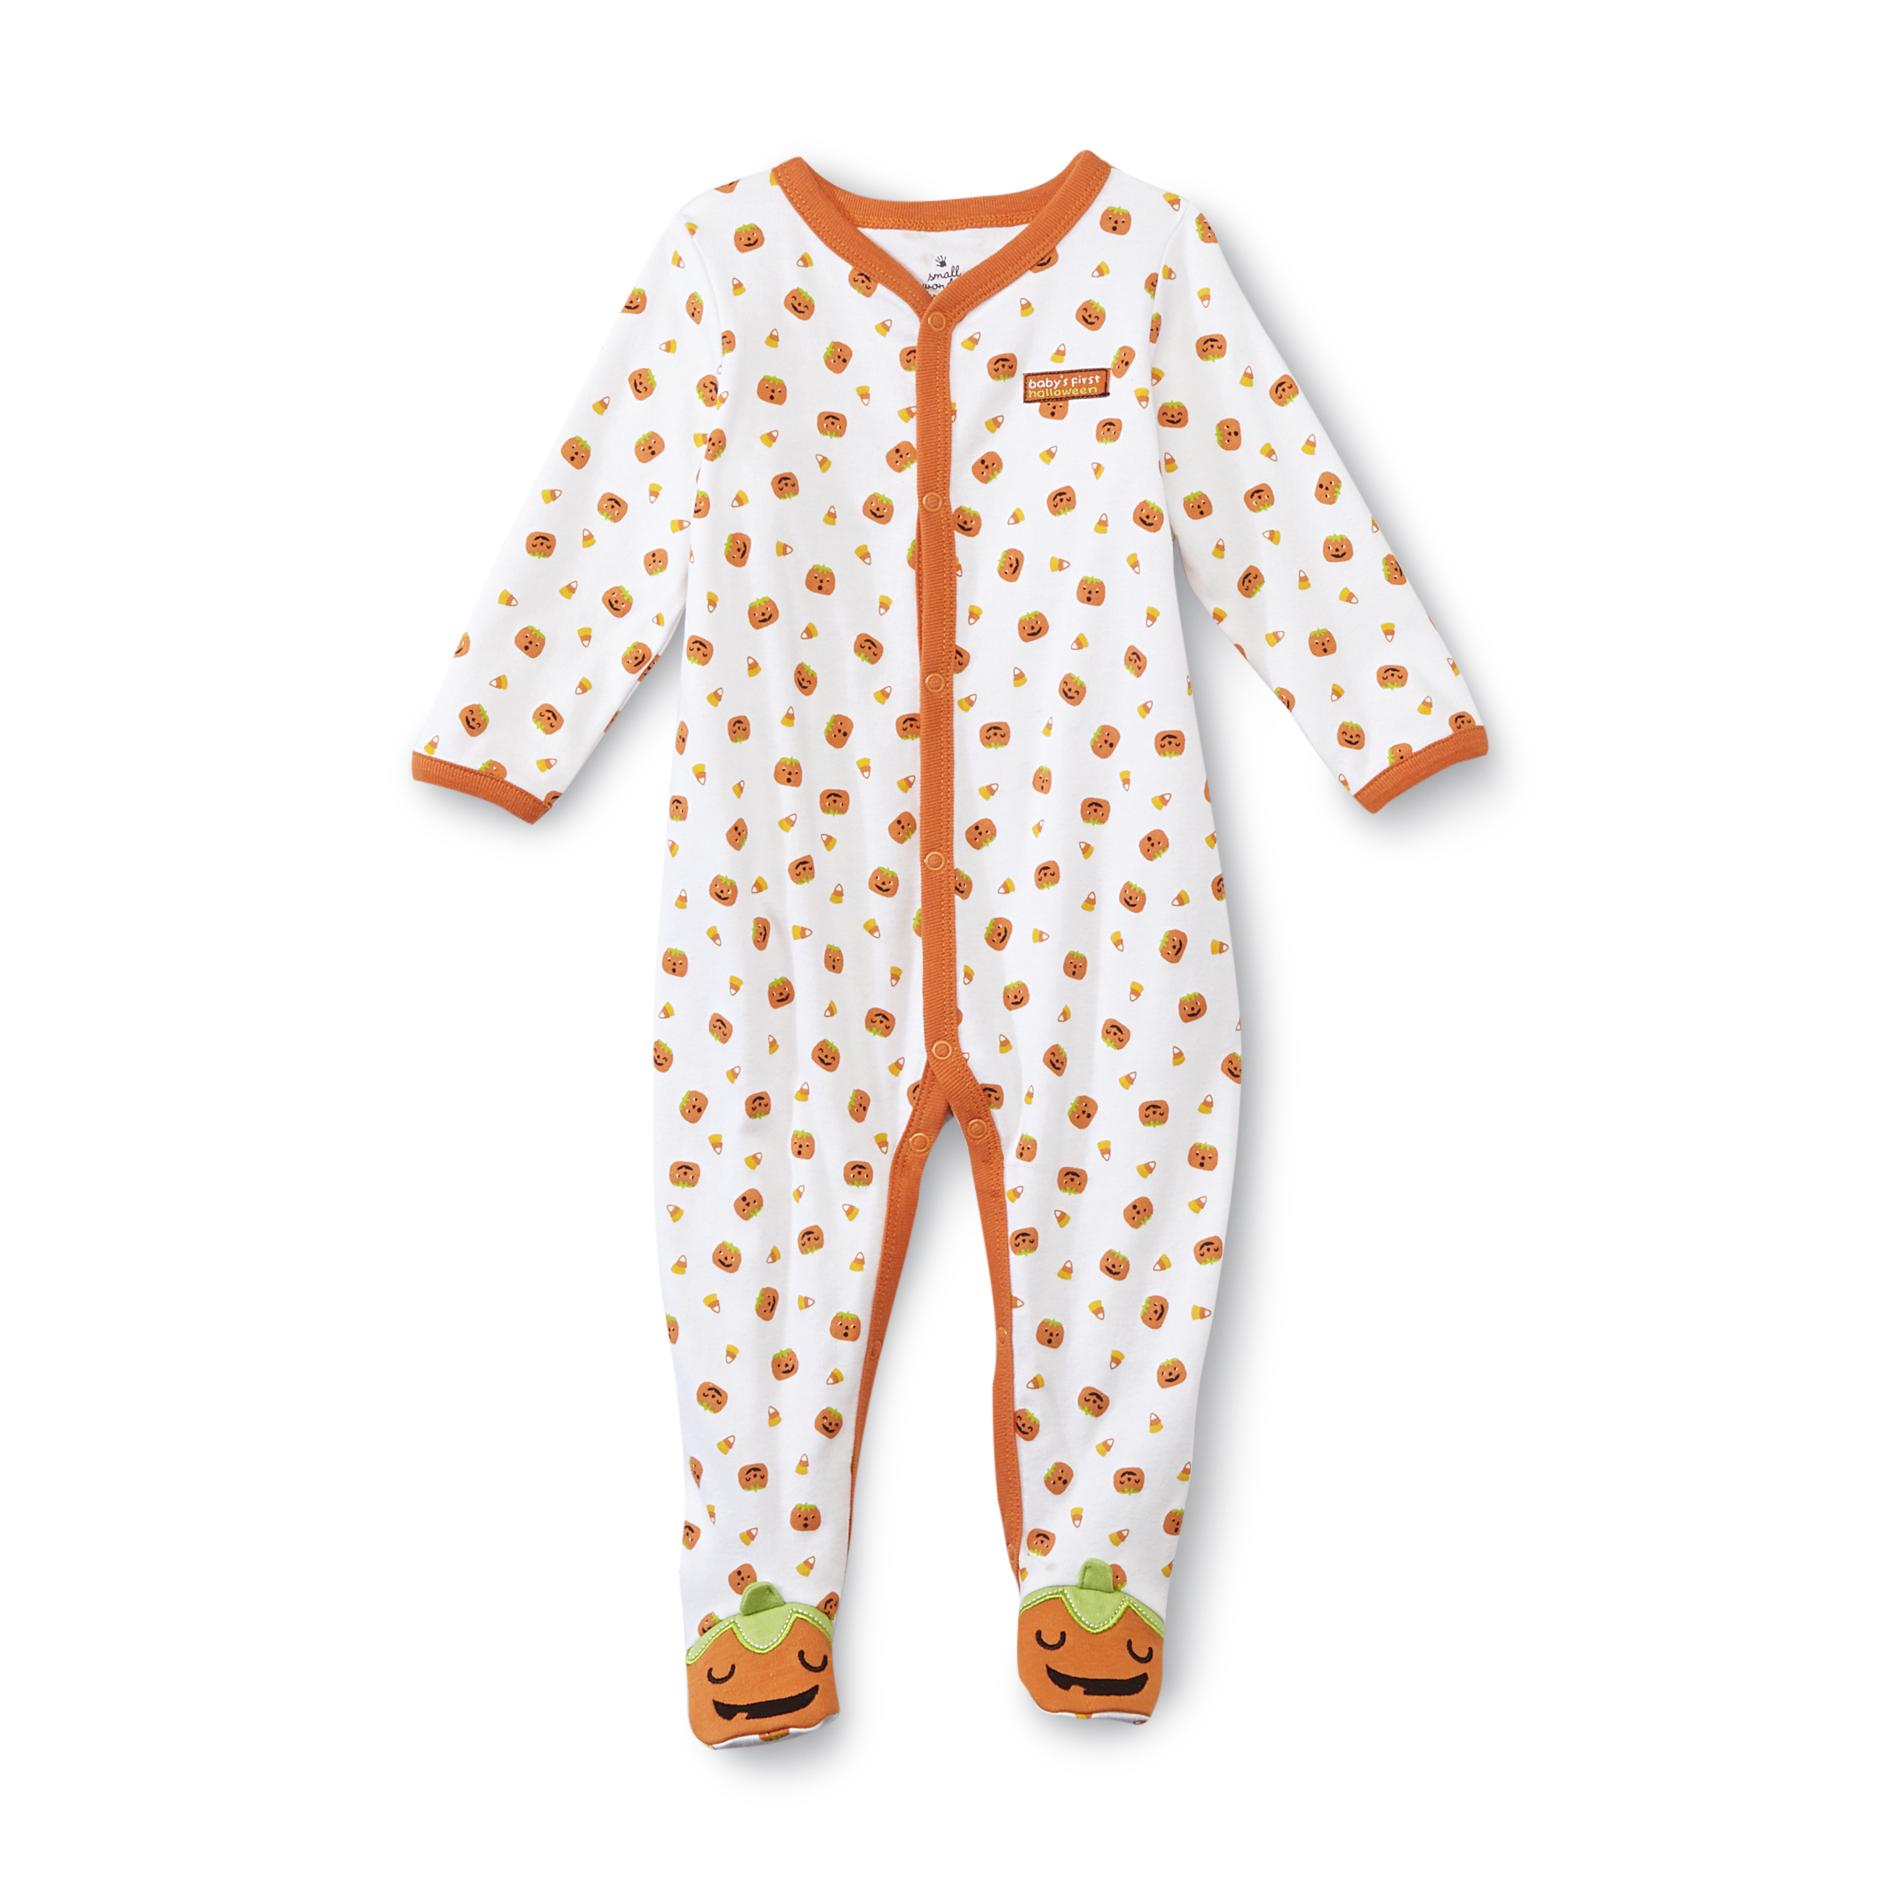 Holiday Editions Newborn's Halloween Sleeper Pajamas - Pumpkins